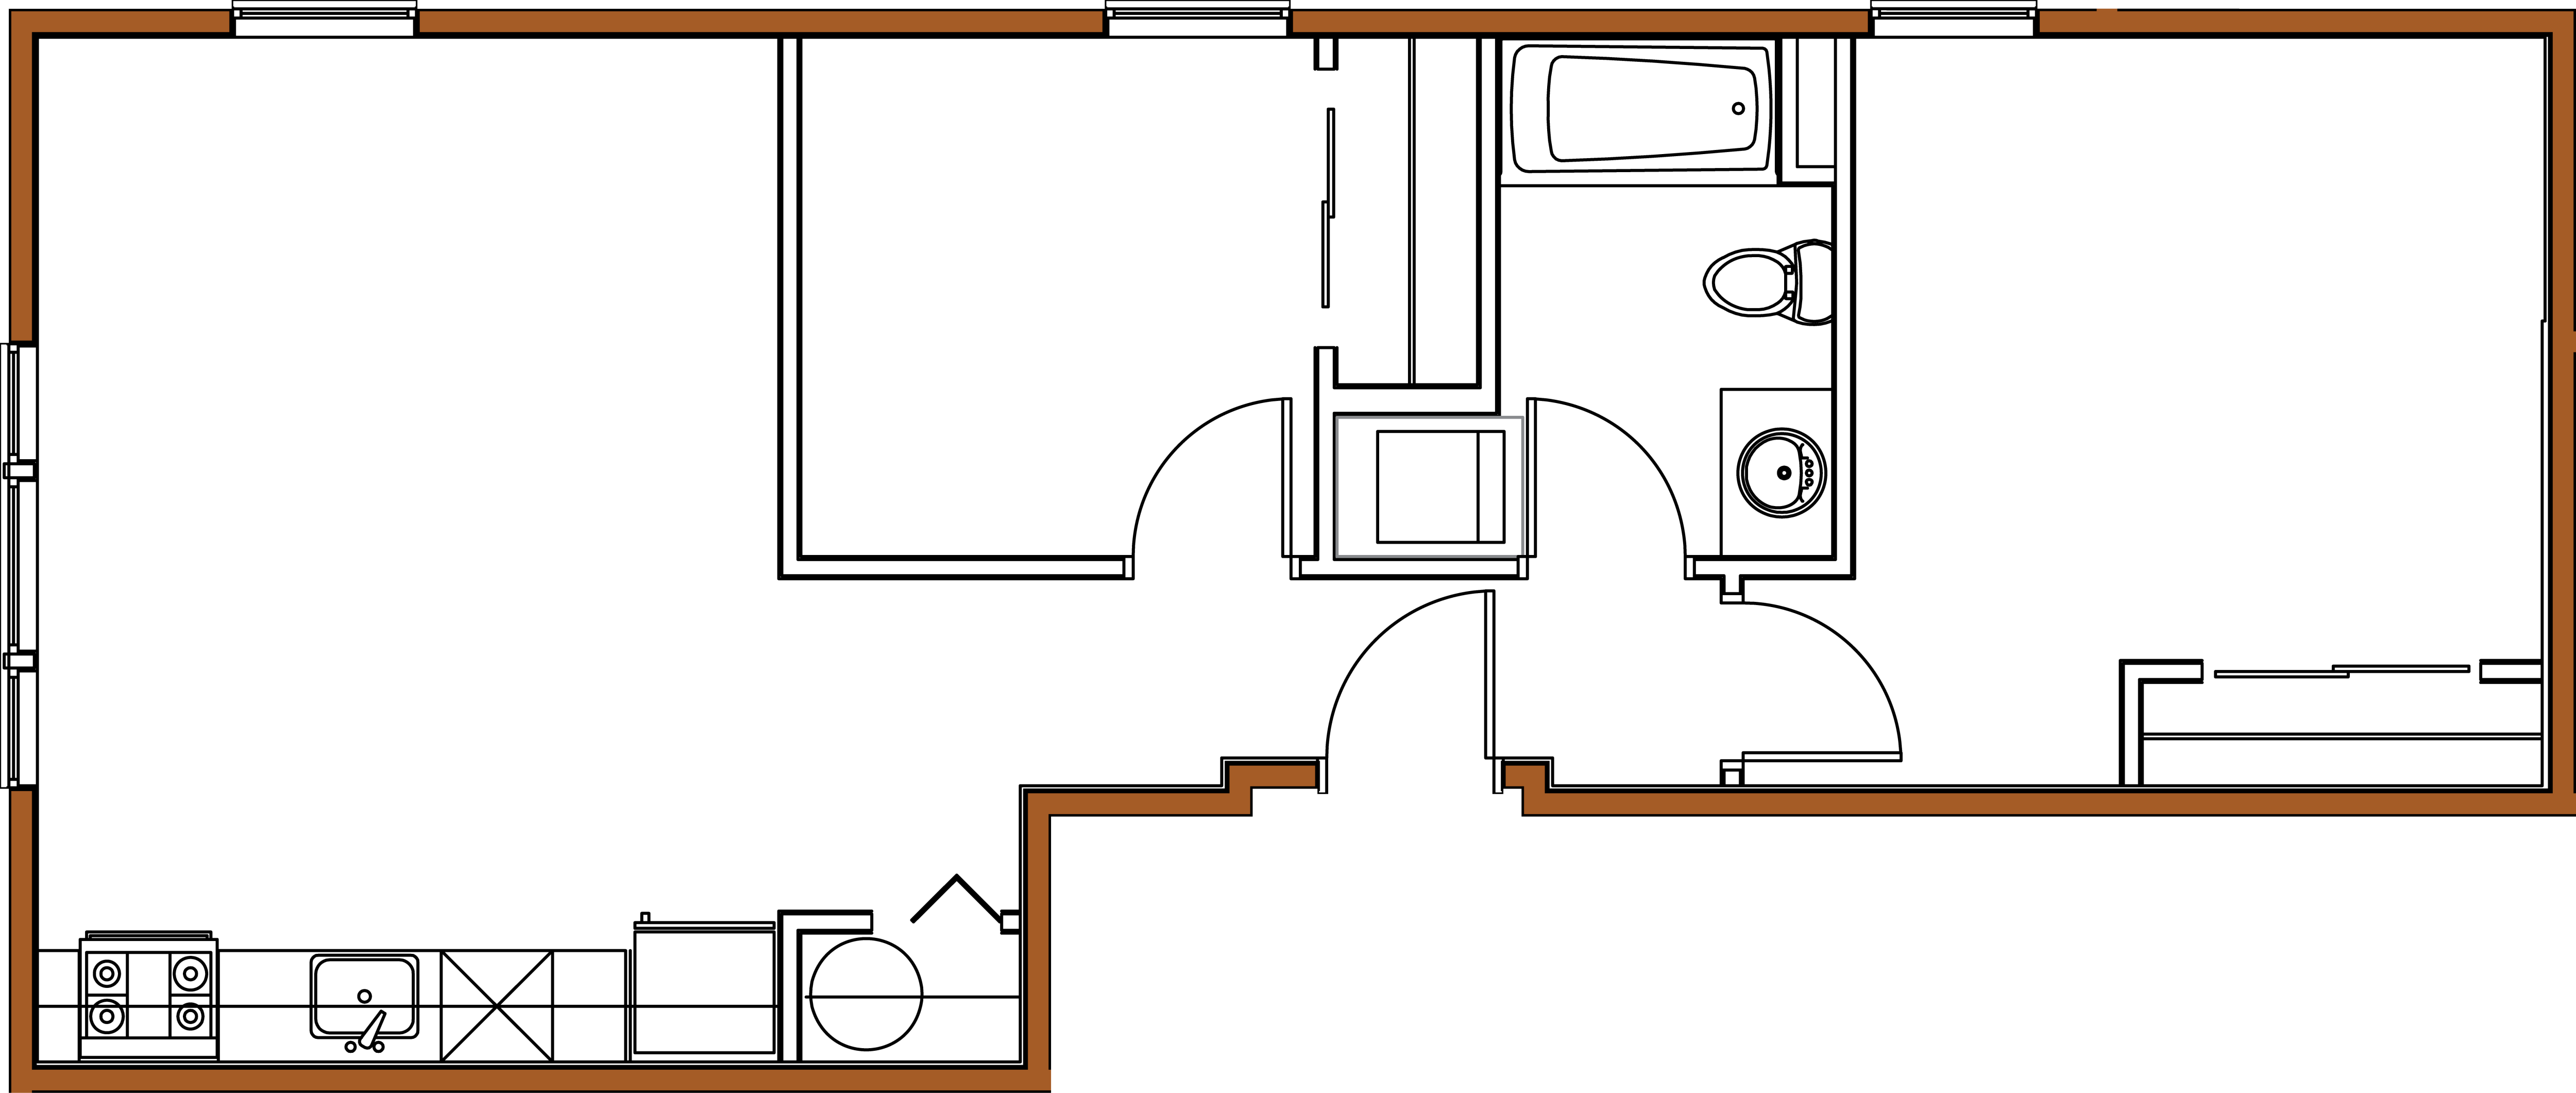 B Street, 2 bedroom, Open - Floorplan.png